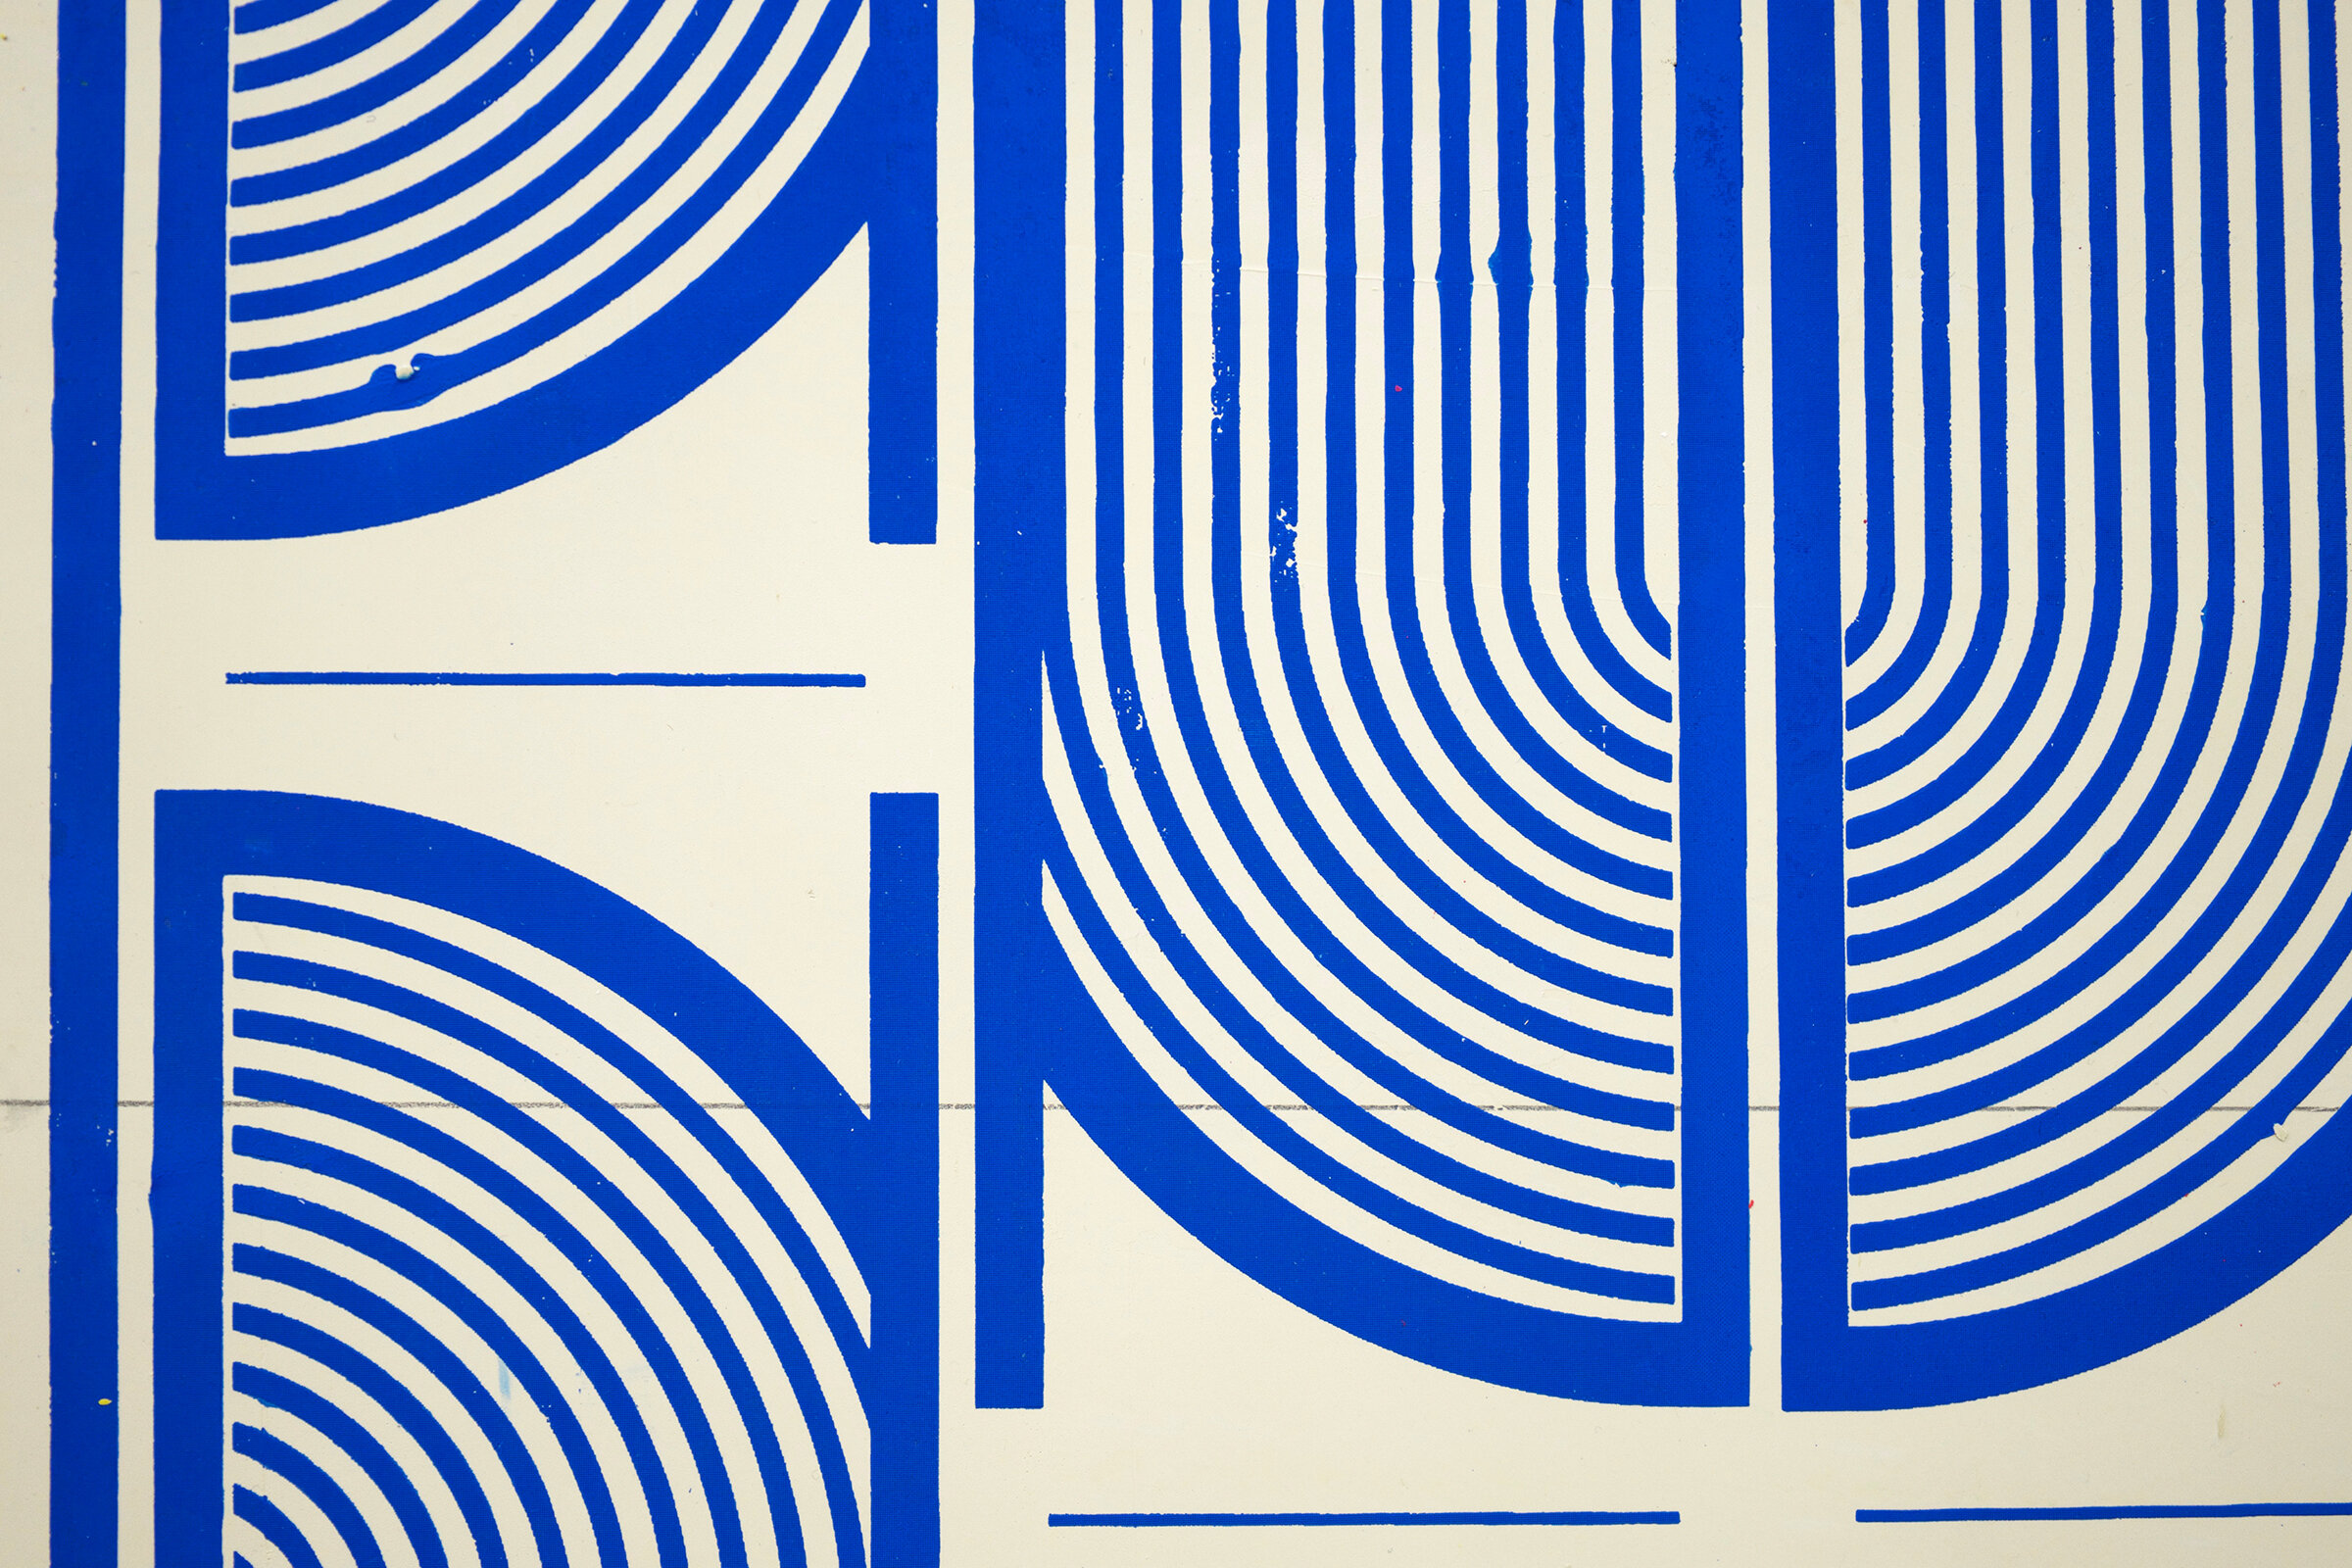  ELISE FERGUSON   (detail)  Vent -Blue , 2018 pigmented plaster on paper 17.25" x 24.75" (framed) 